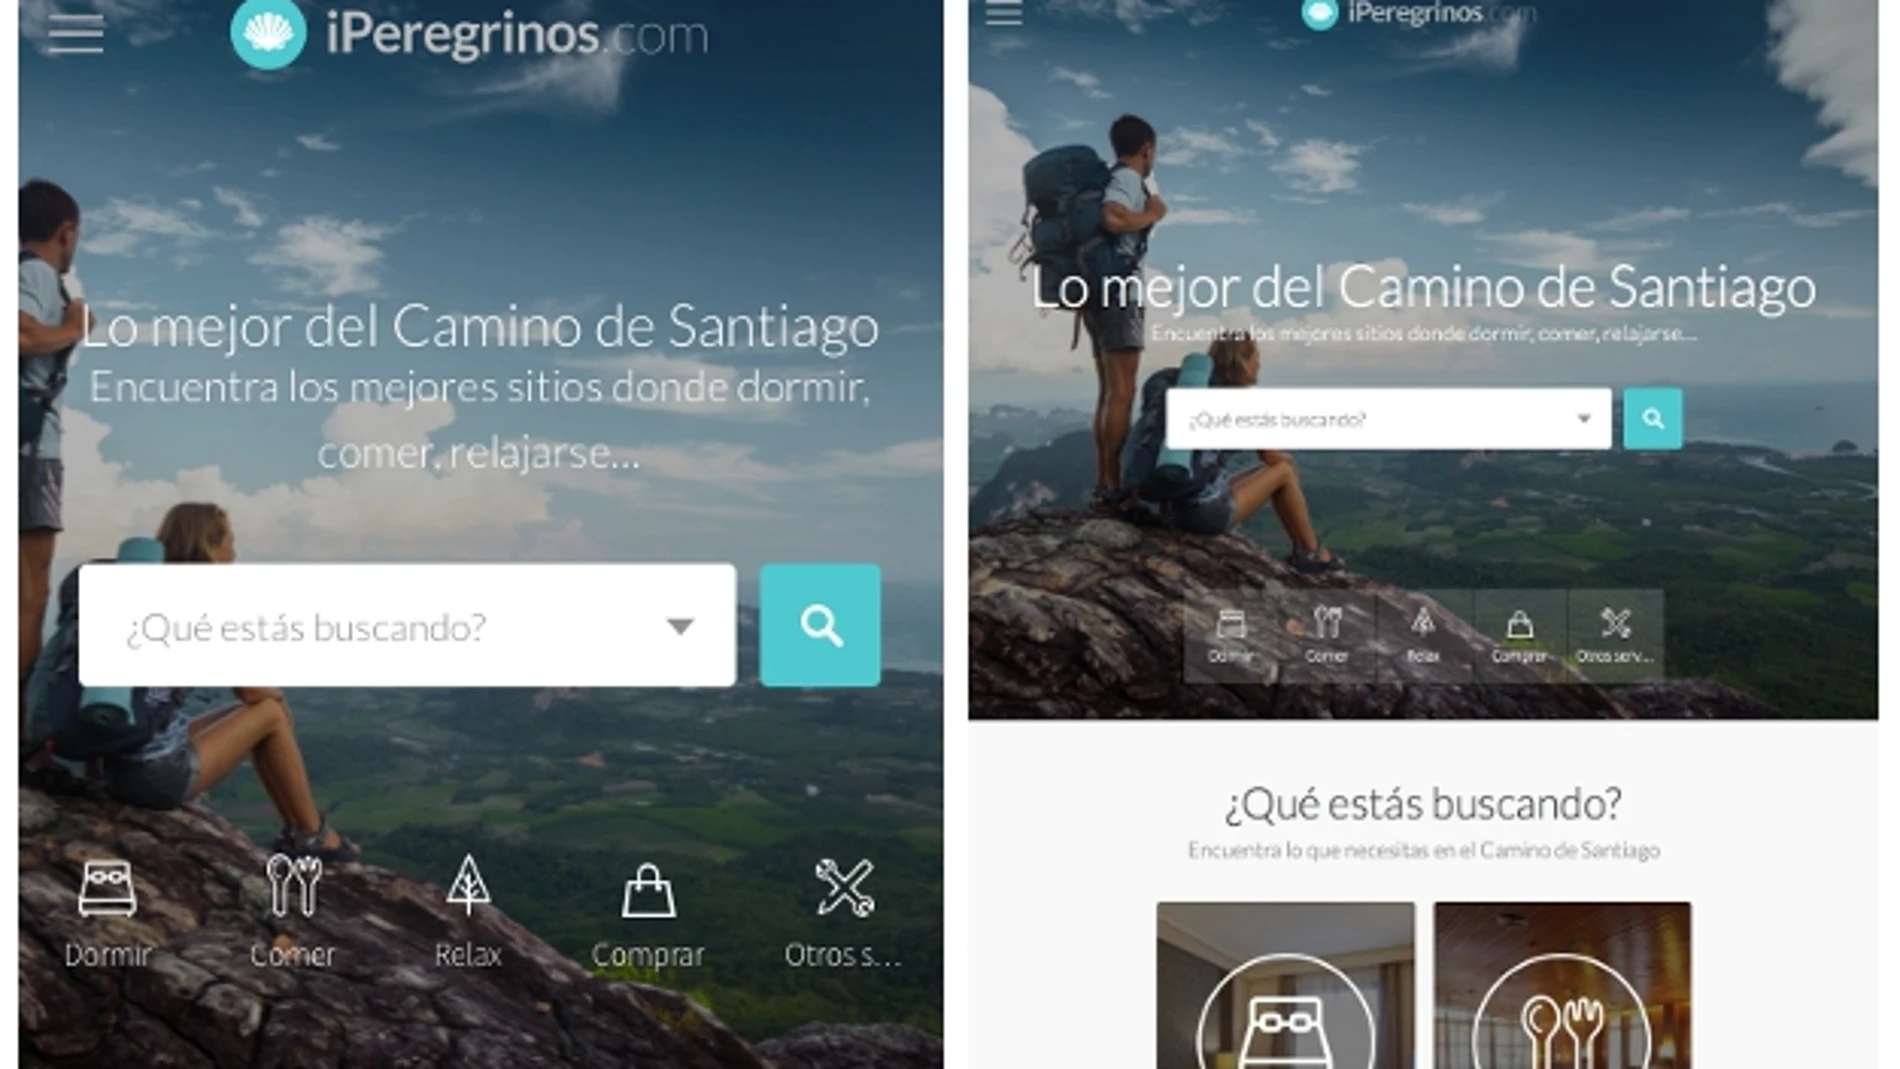 El Camino de Santiago en tu móvil con la app de iPeregrinos